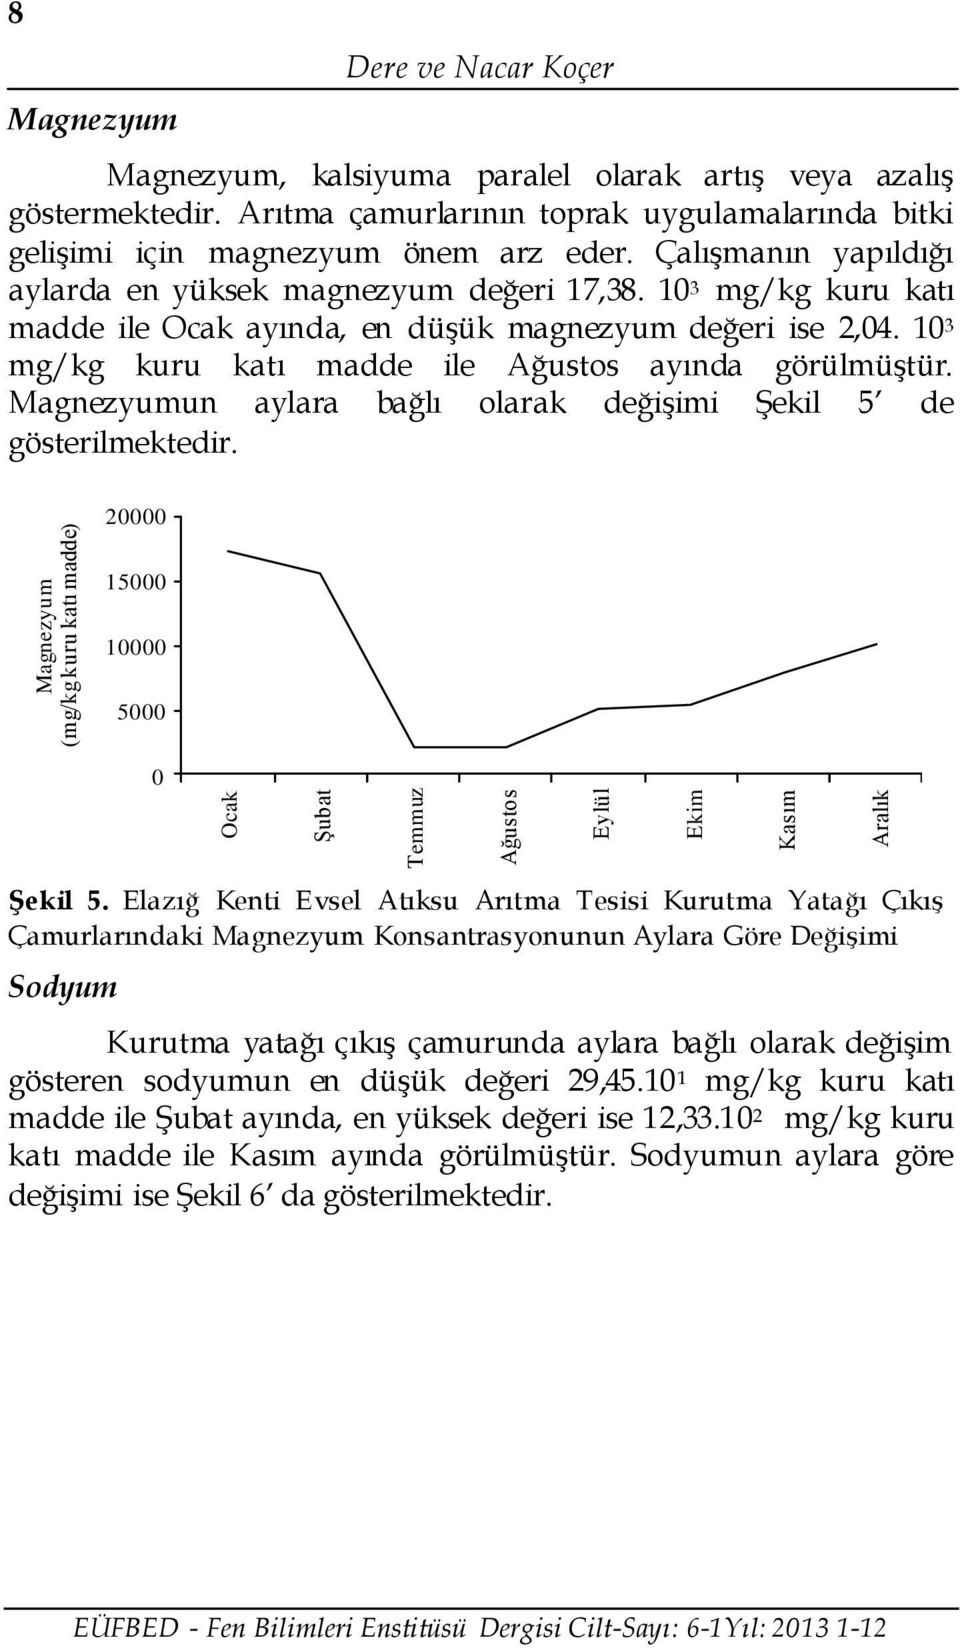 1 3 mg/kg kuru katı madde ile Ocak ayında, en düşük magnezyum değeri ise 2,4. 1 3 mg/kg kuru katı madde ile ayında görülmüştür. Magnezyumun aylara bağlı olarak değişimi Şekil 5 de gösterilmektedir.